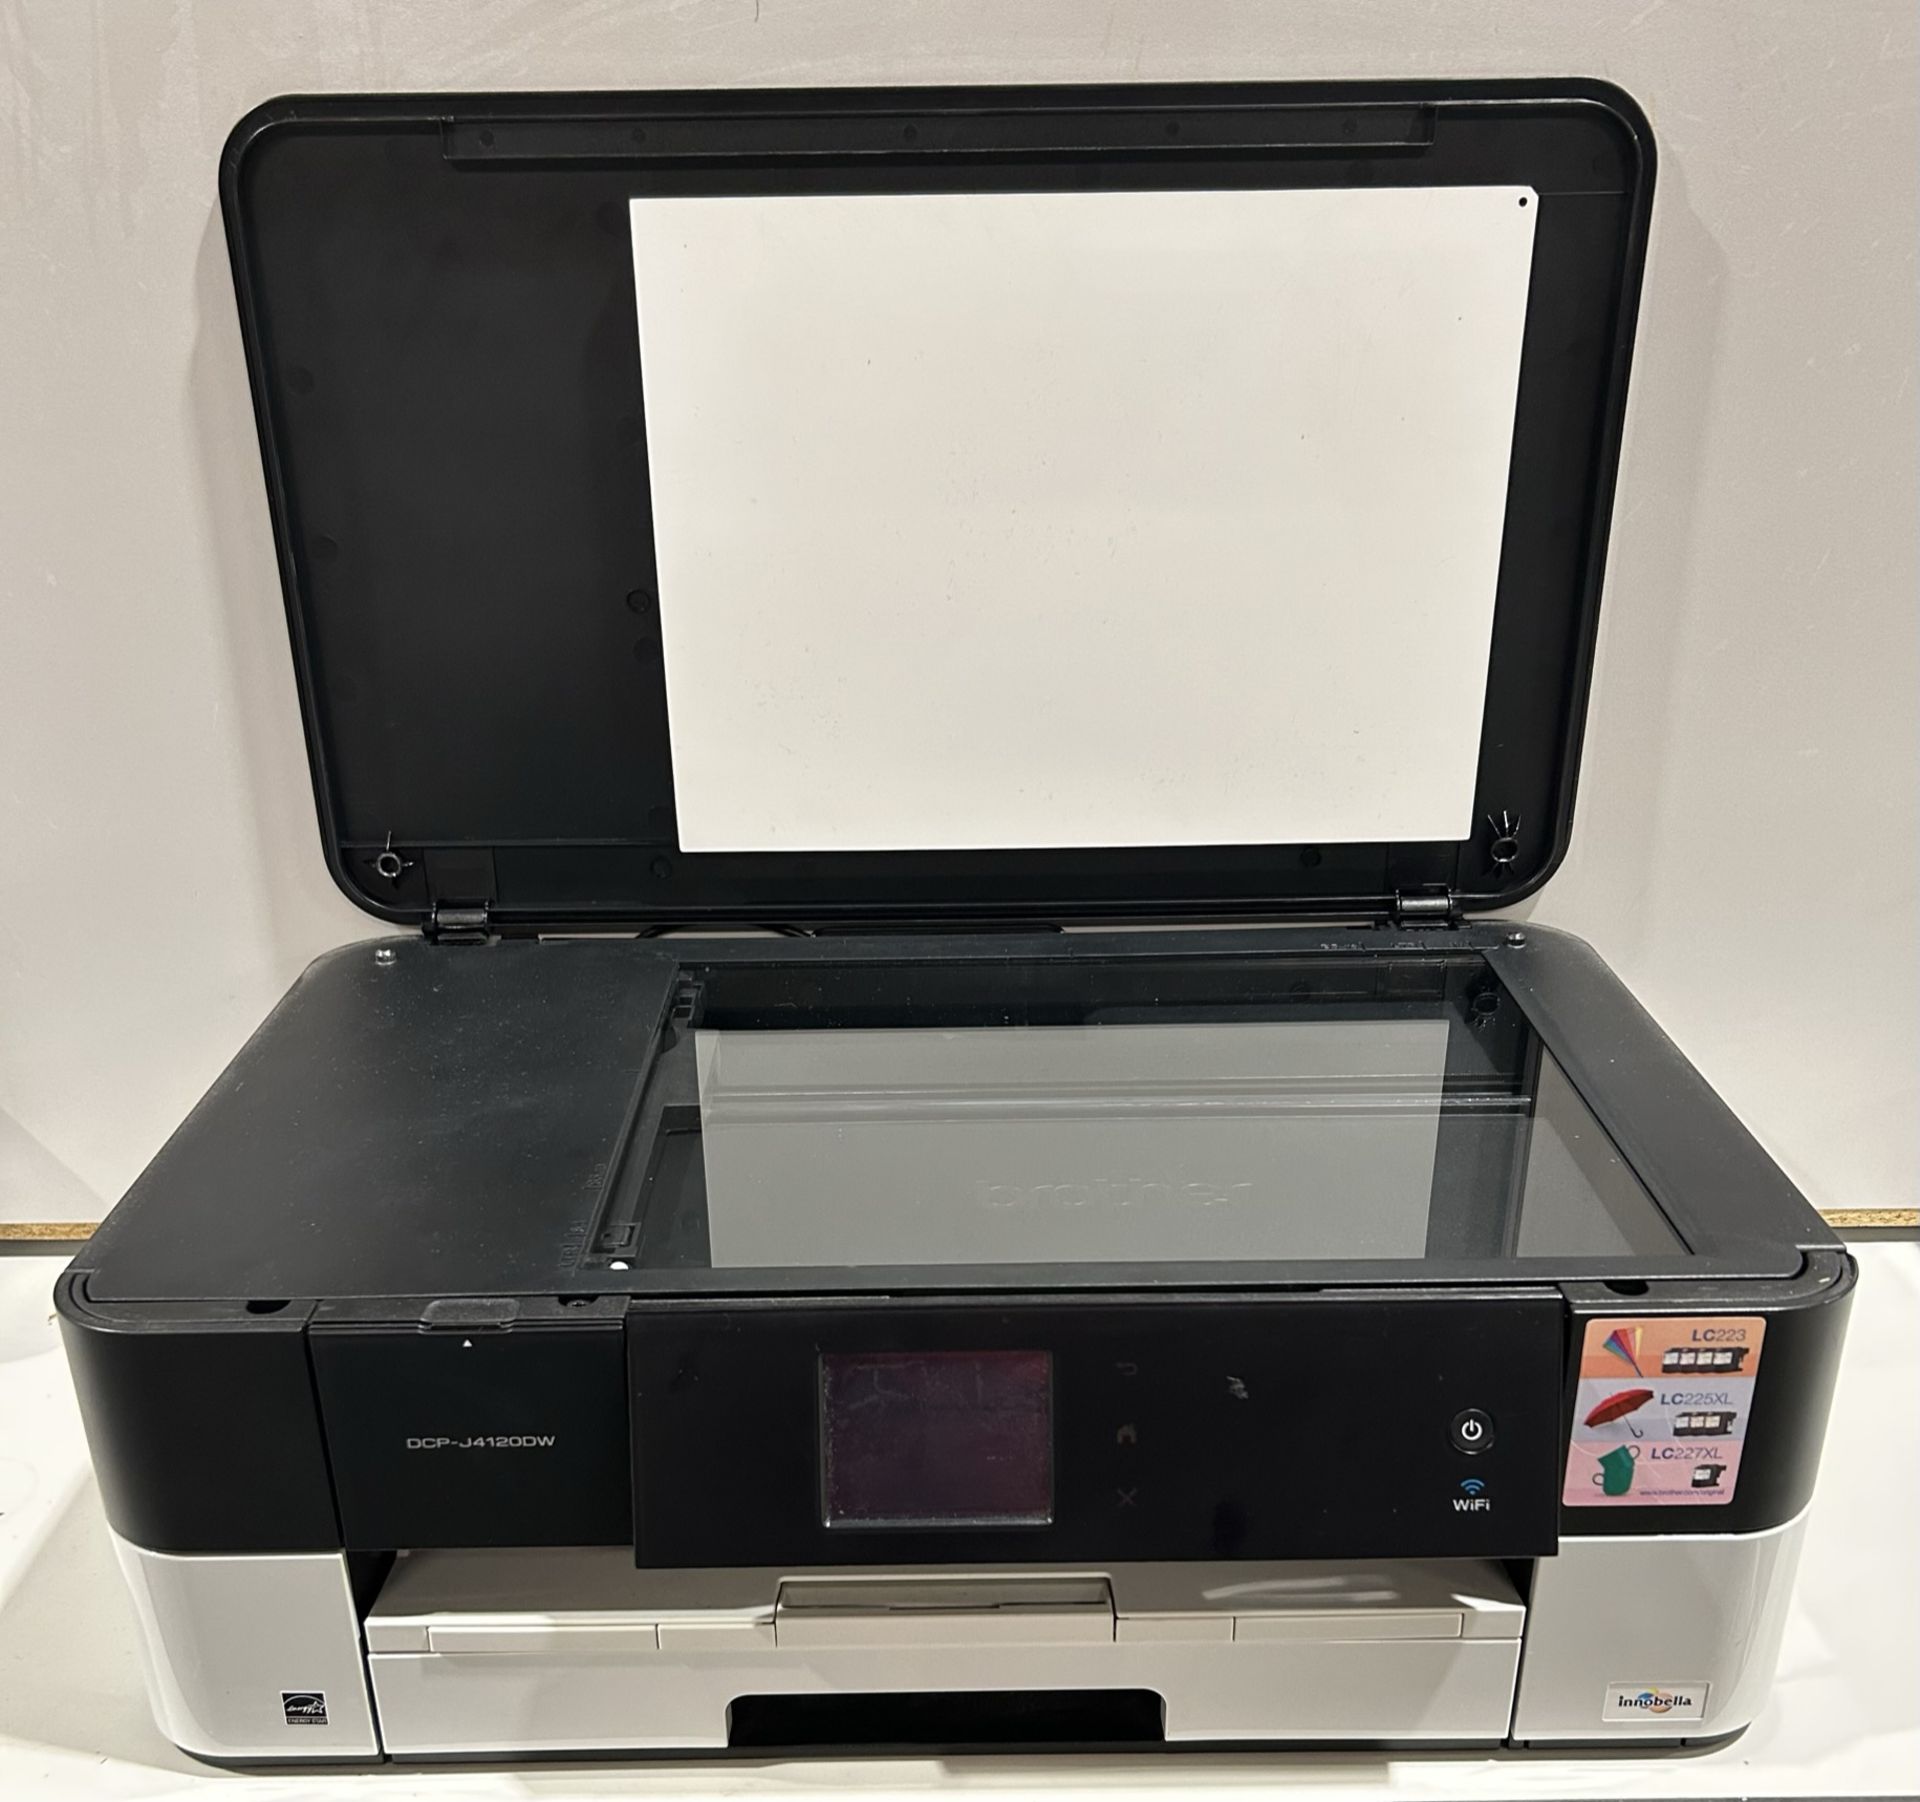 Brother DCP-J412ODW Desktop Printer/Scanner - Image 3 of 4